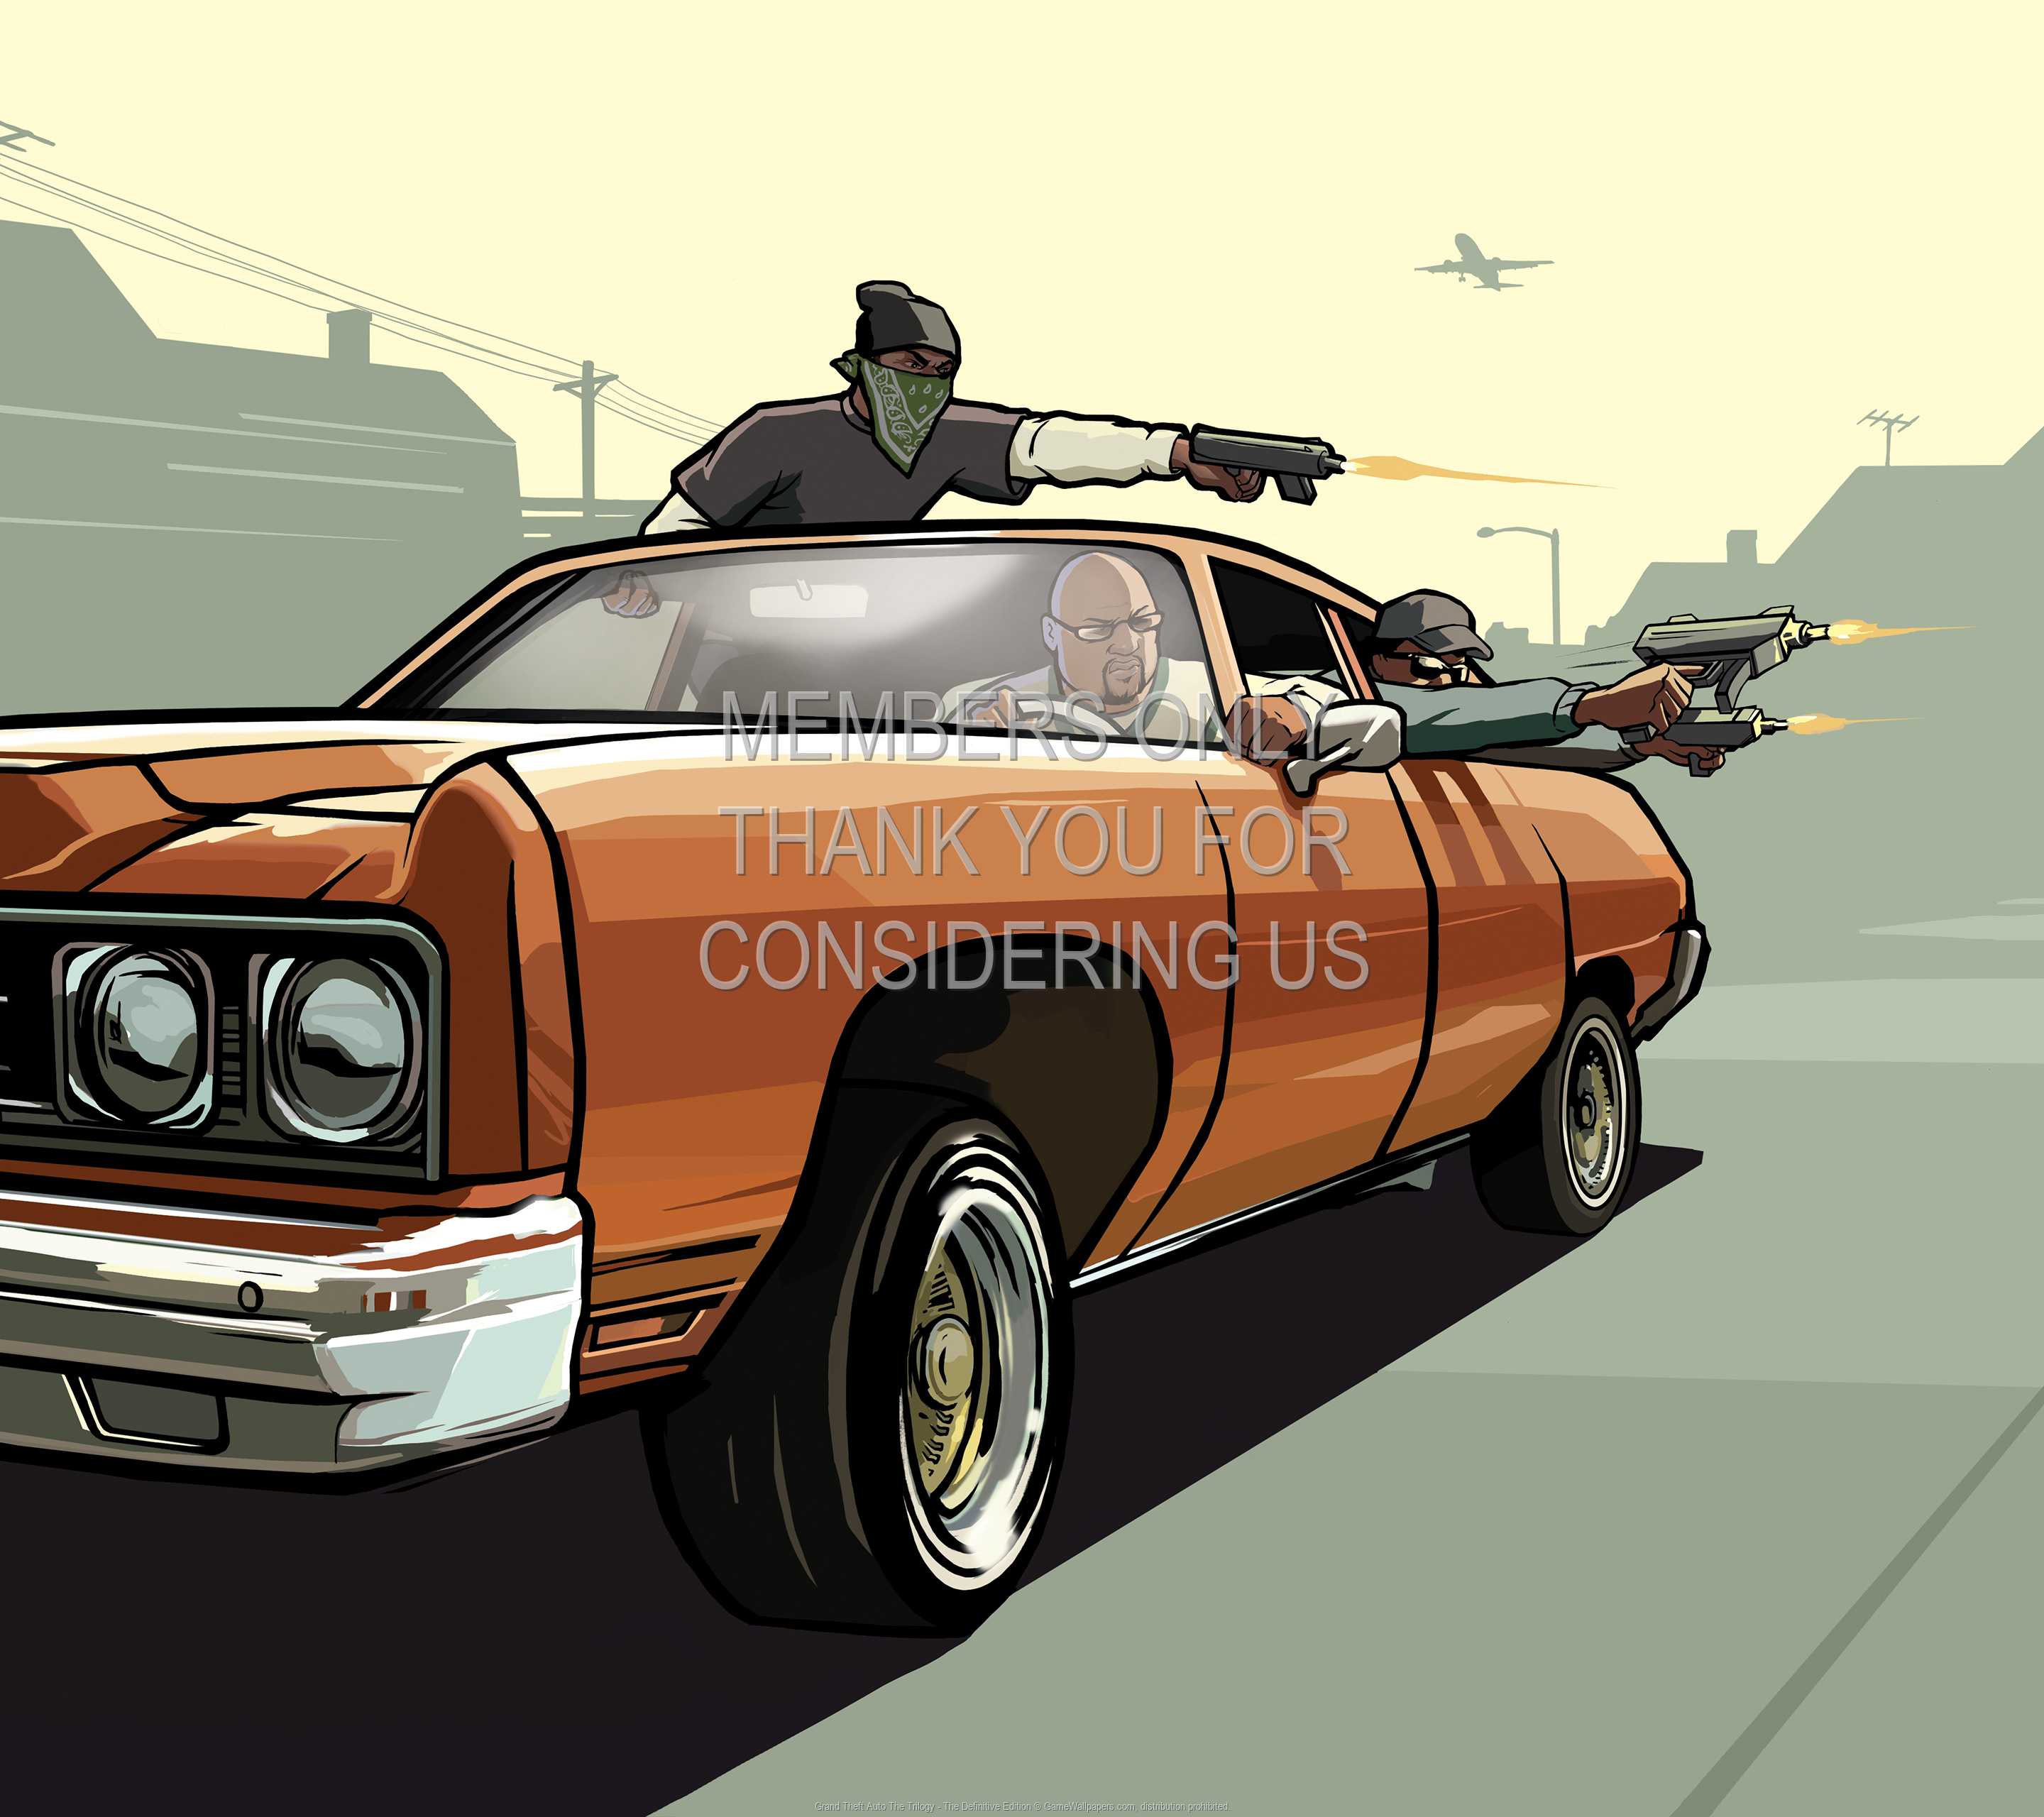 Grand Theft Auto: The Trilogy - The Definitive Edition 1440p Horizontal Móvil fondo de escritorio 02